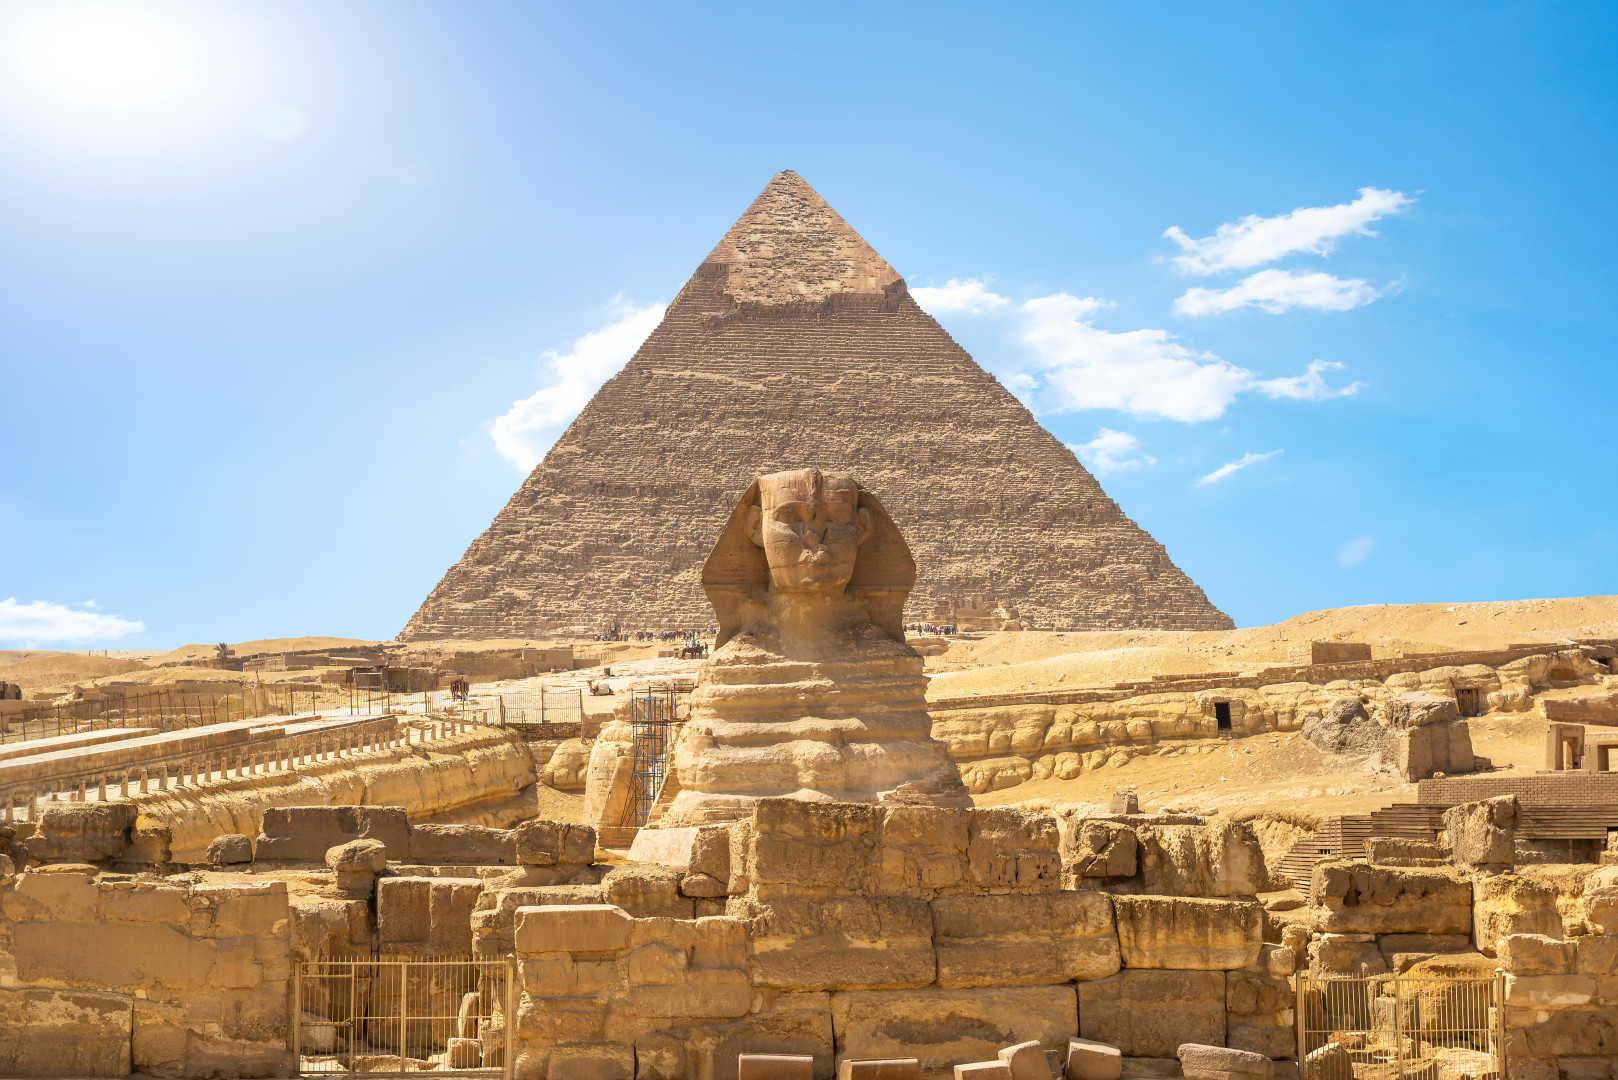 Urlaub in Ägypten. Besuche diese berühmten Pyramiden von Gizeh